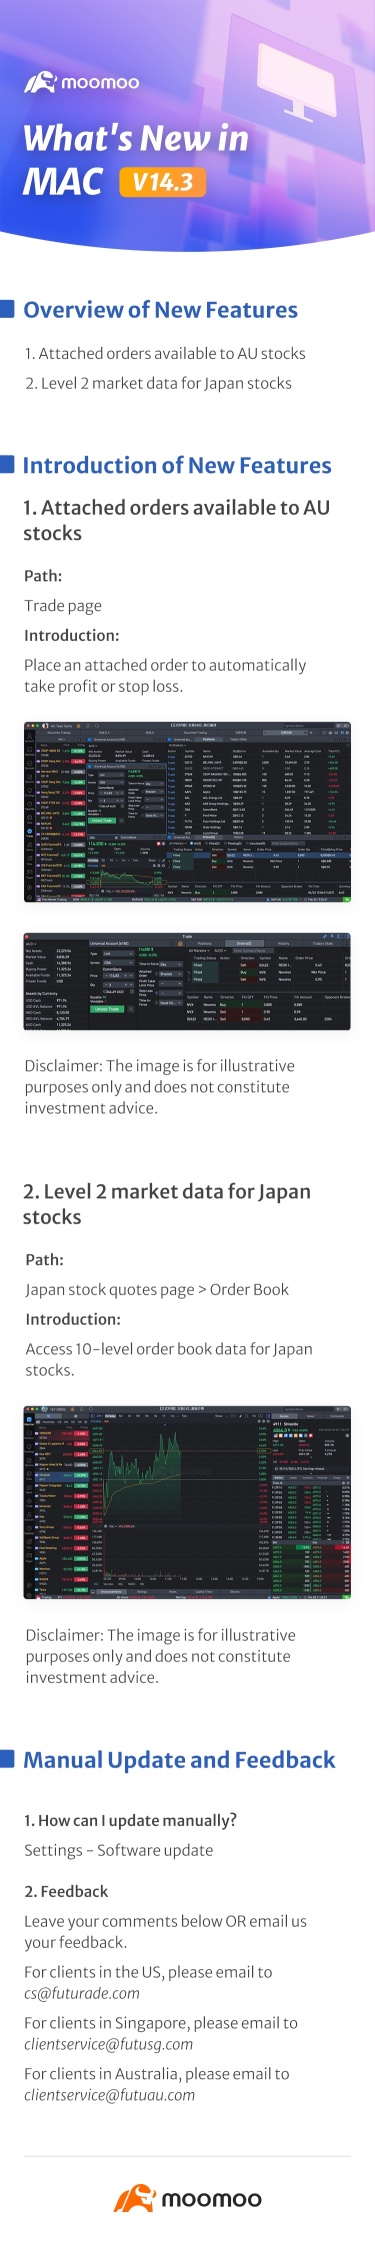 新着情報：Mac v14.3にて日本株式のLV2市場データが利用可能となりました。